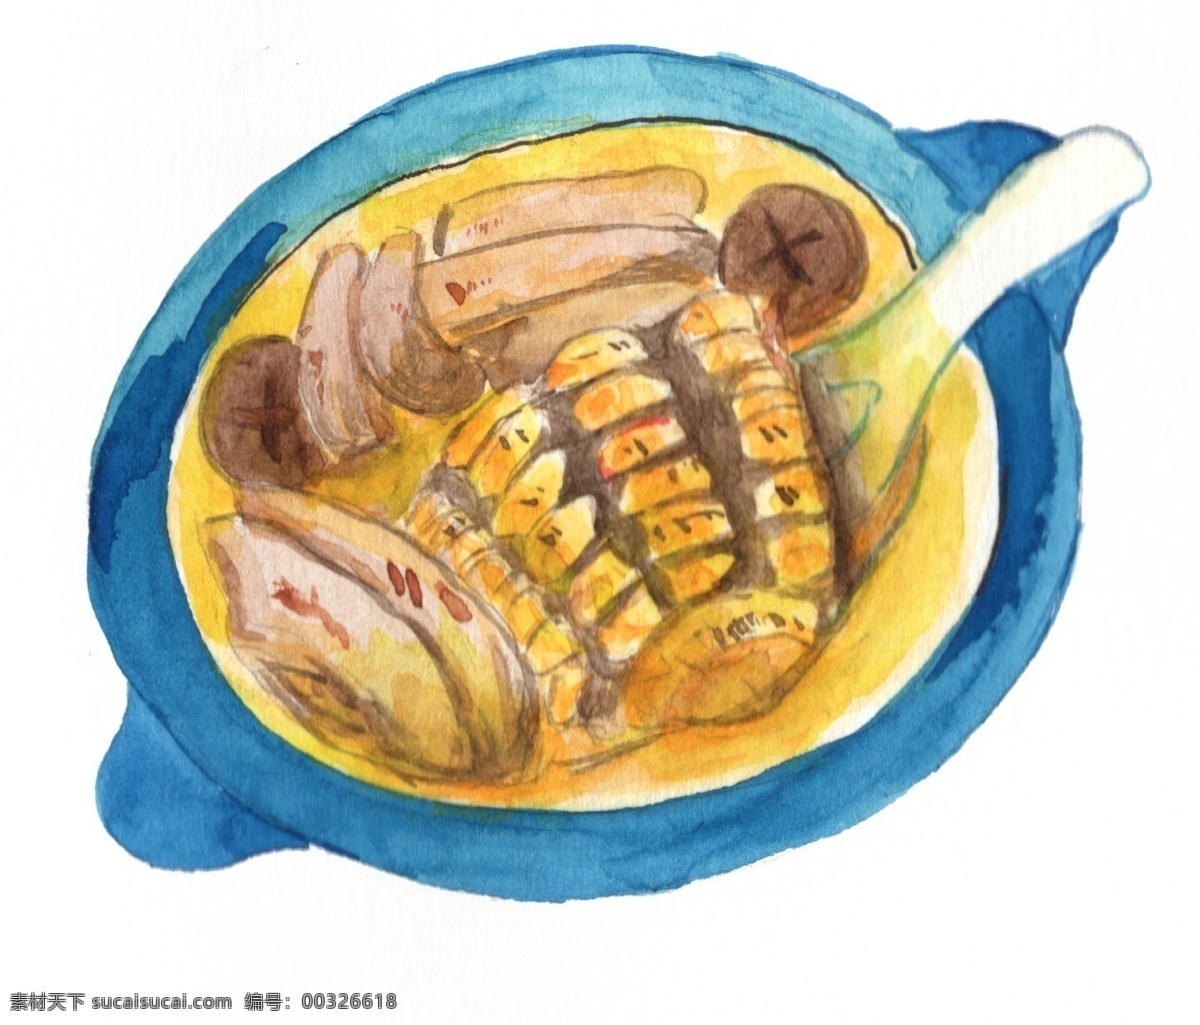 卡通 手绘 美味 香菇 玉米 汤 插画 香菇玉米汤 菌菇 高汤 浓汤 汤羹 食物 菜肴 菜品 佳肴 热腾腾 卡通手绘